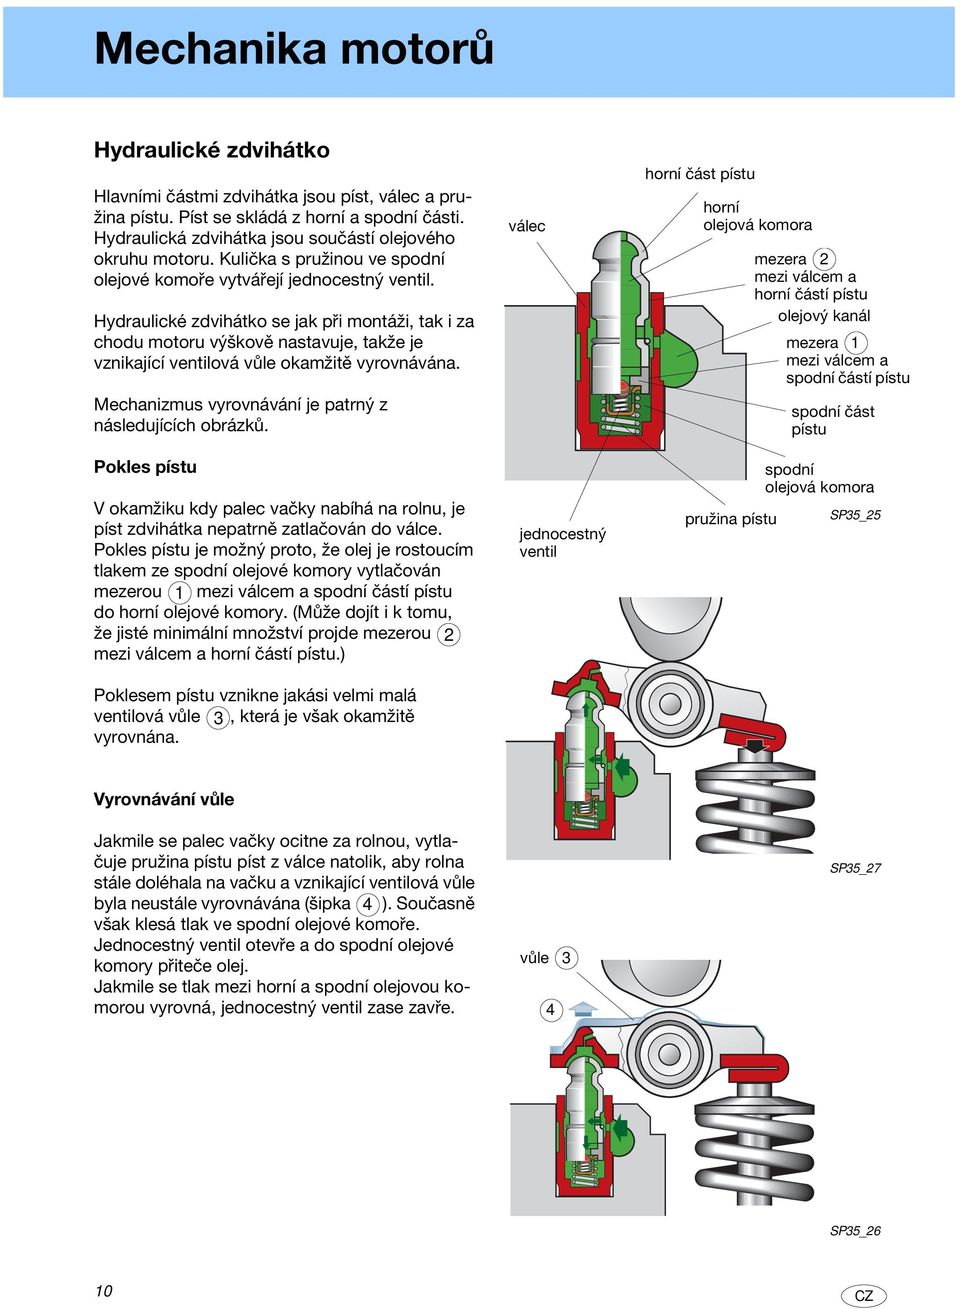 Hydraulické zdvihátko se jak při montáži, tak i za chodu motoru výškově nastavuje, takže je vznikající ventilová vůle okamžitě vyrovnávána. Mechanizmus vyrovnávání je patrný z následujících obrázků.